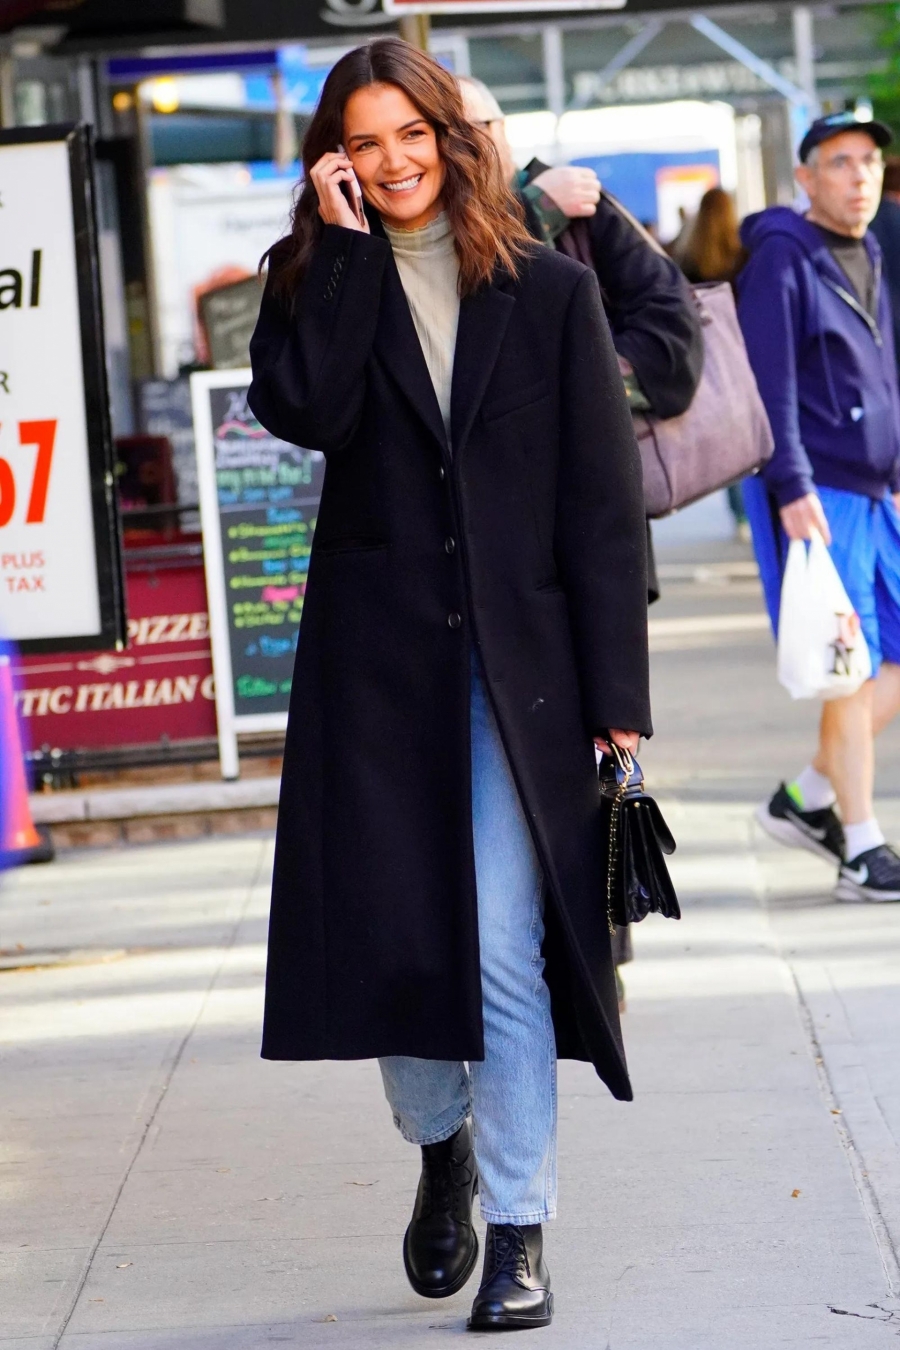 Vào những ngày trời lạnh, Katie Holmes gợi ý set đồ quốc dân với áo len cổ lọ, quần jeans xanh sáng màu và áo choàng dạ dài màu đen ấm áp. Lúc này, một đôi boots 'ton sur ton' với áo khoác là vô cùng hợp lý.